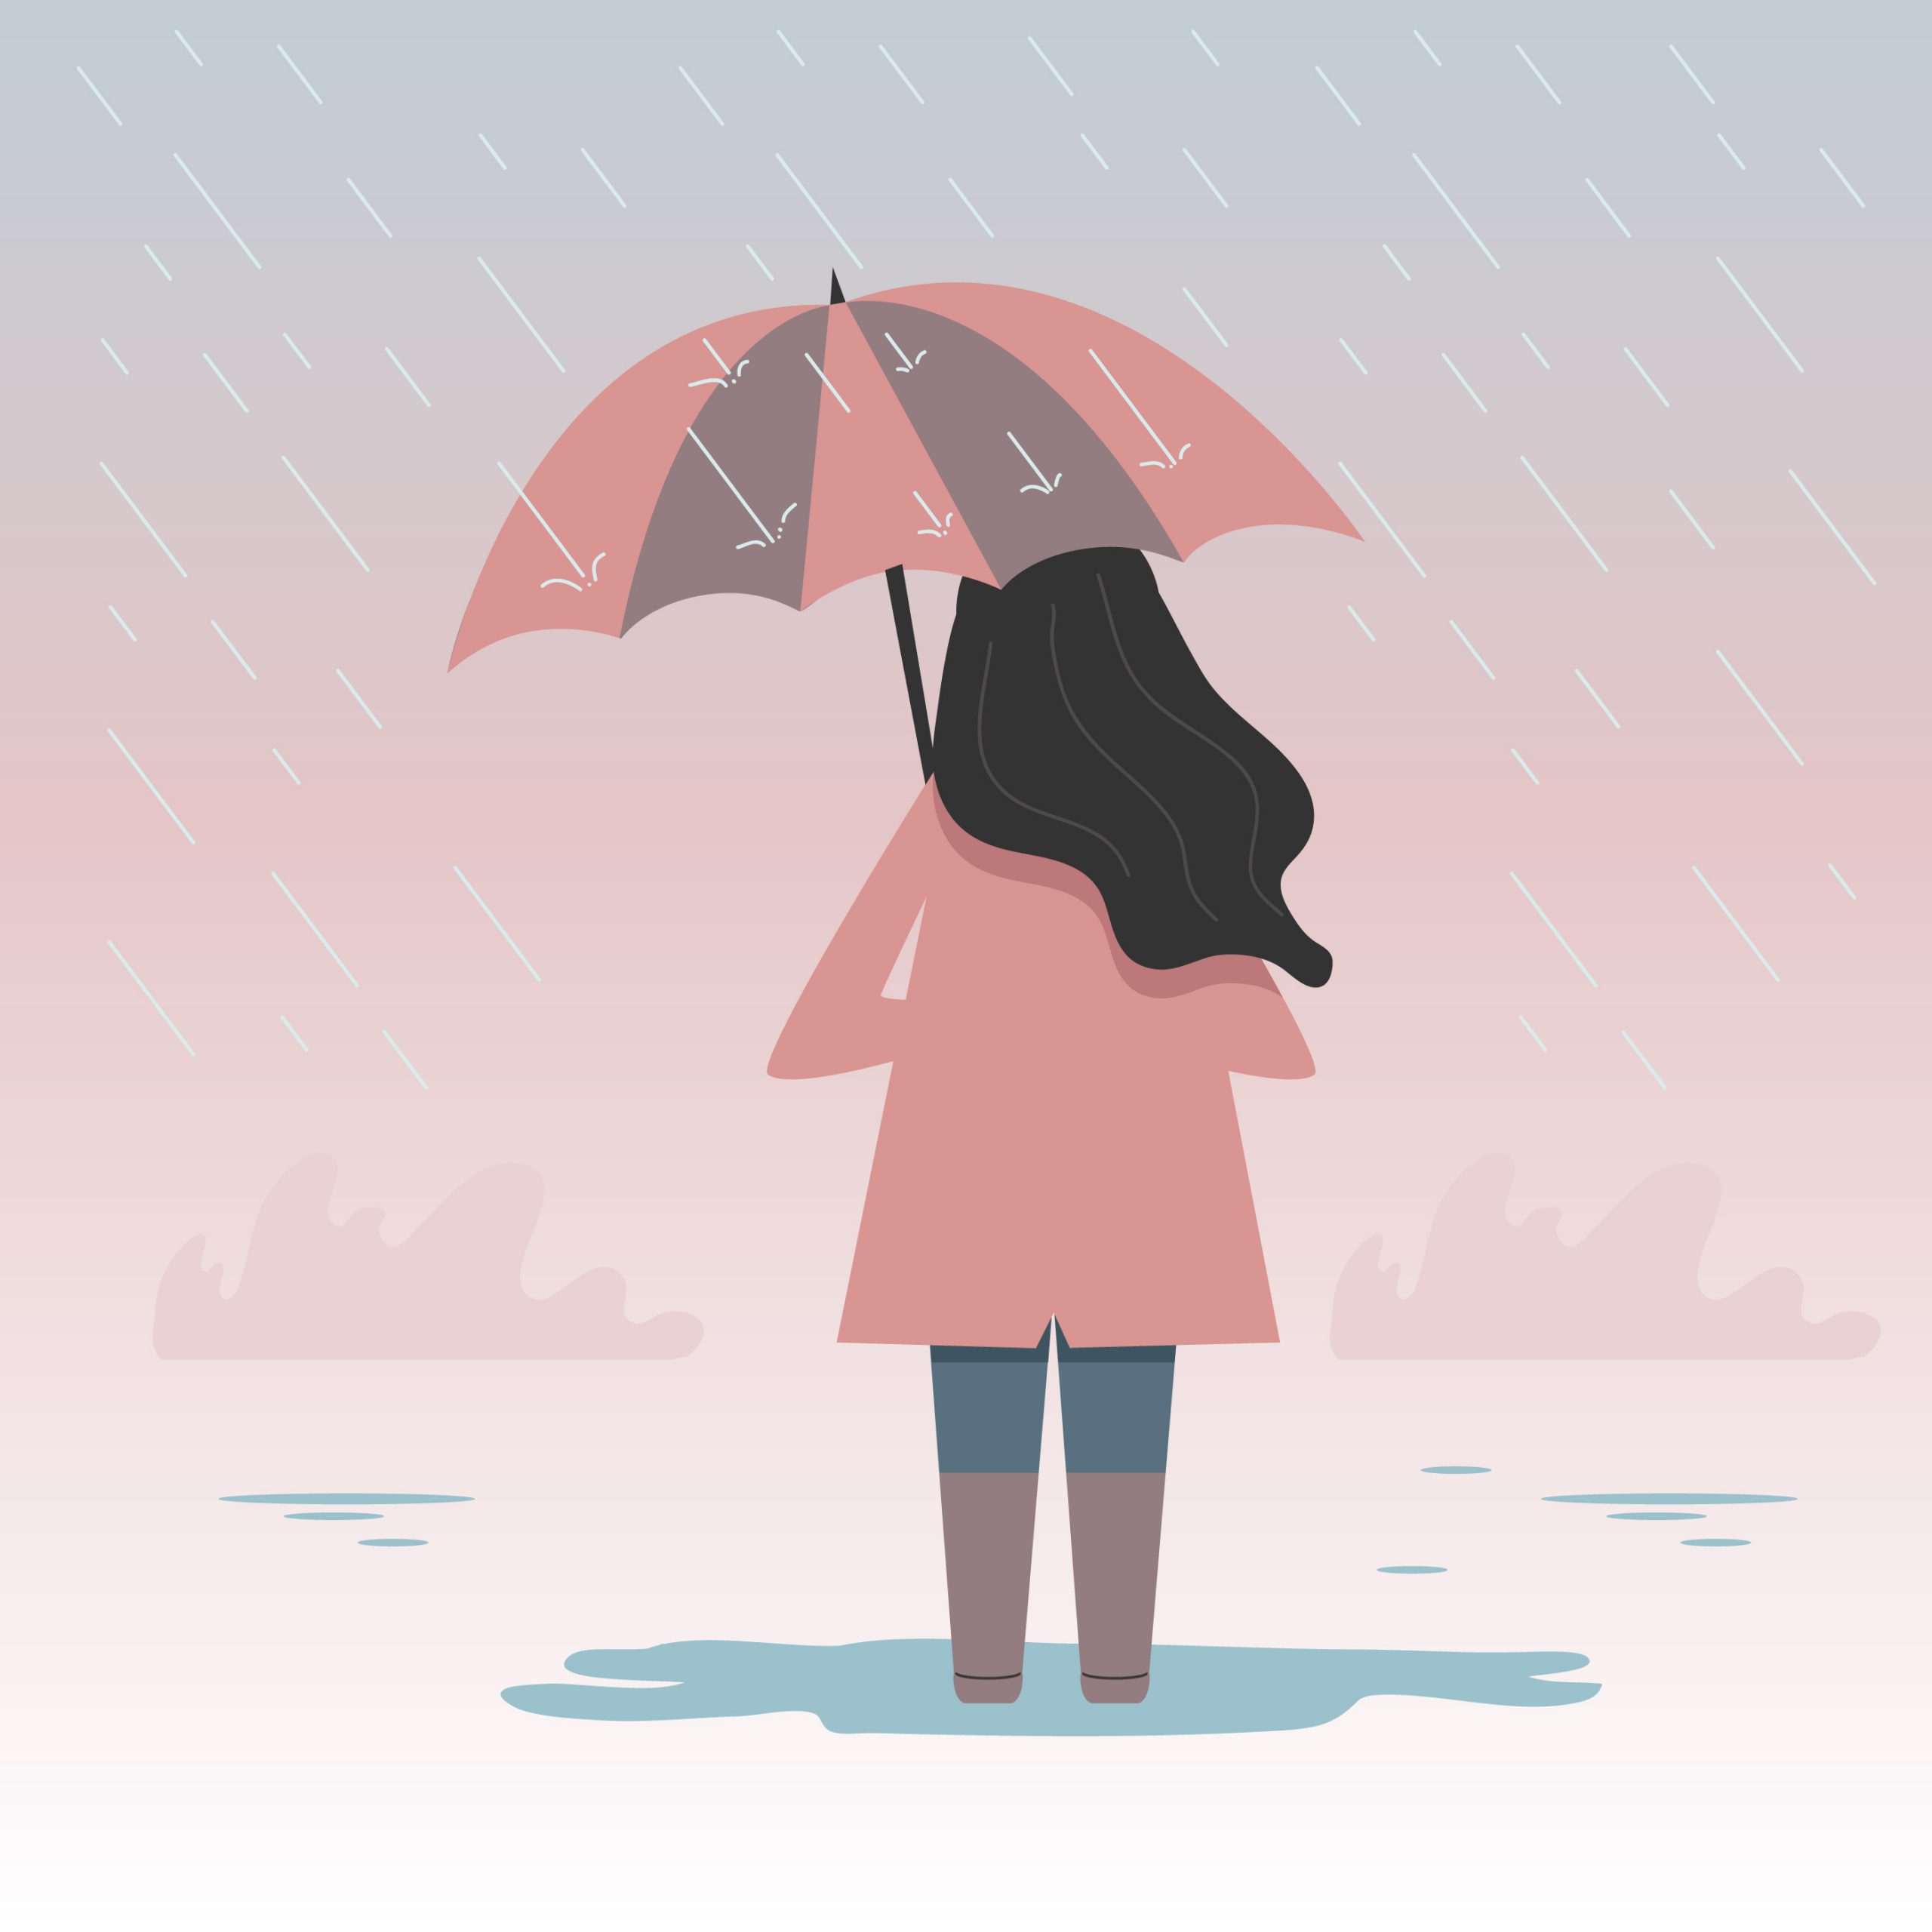 دانلود وکتور دختر در باران